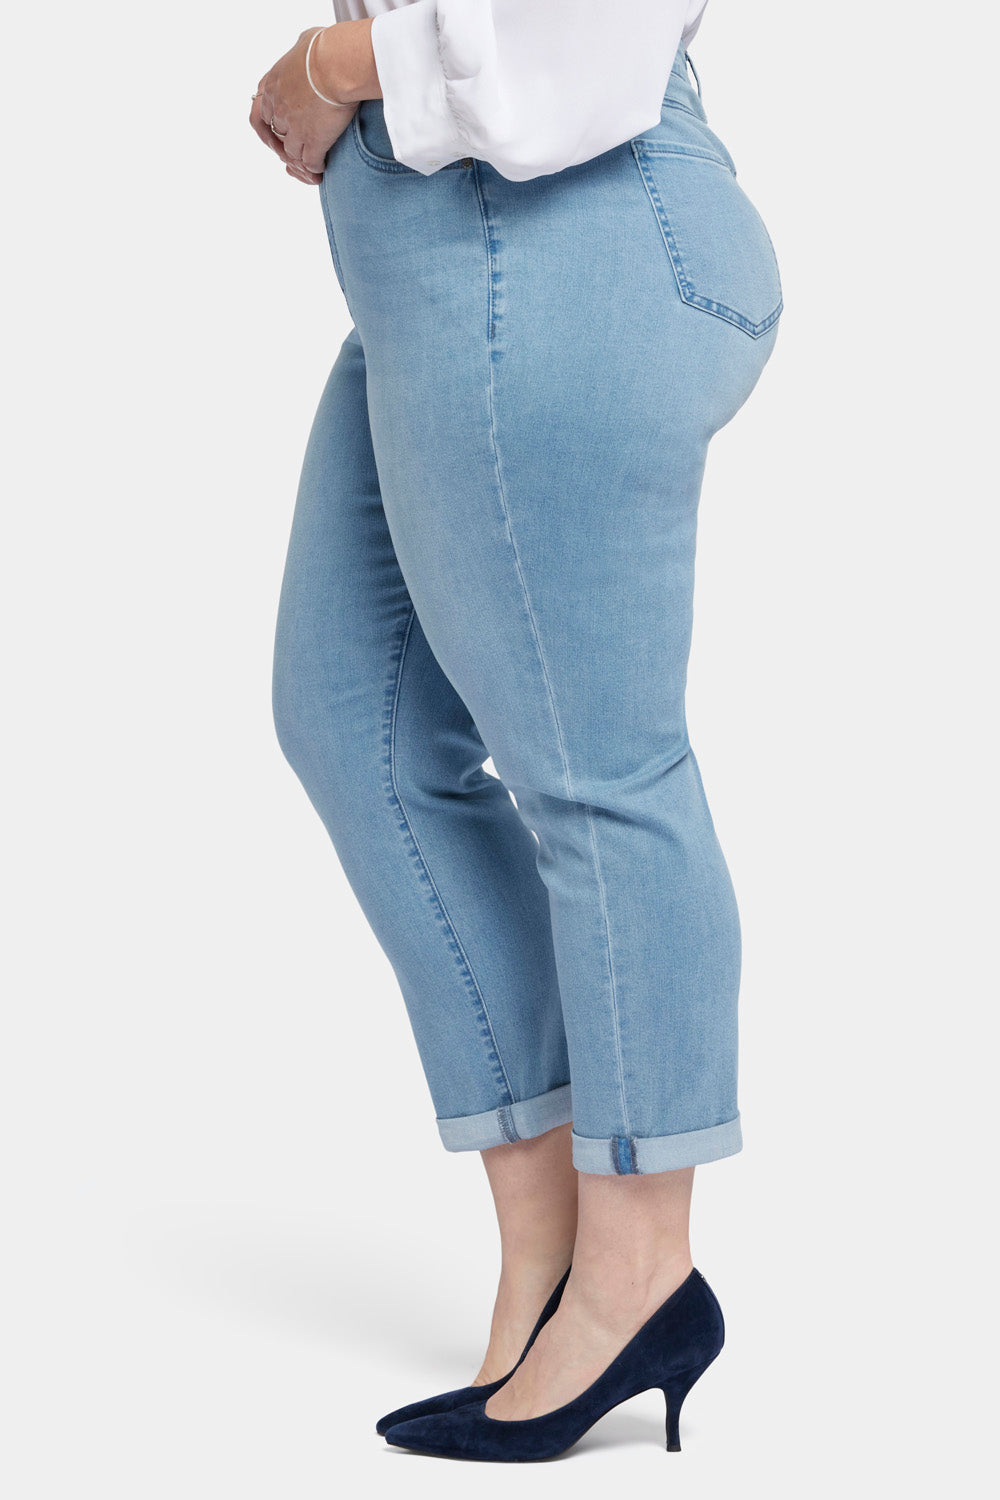 Margot Girlfriend Jeans In Plus Size - Kingston